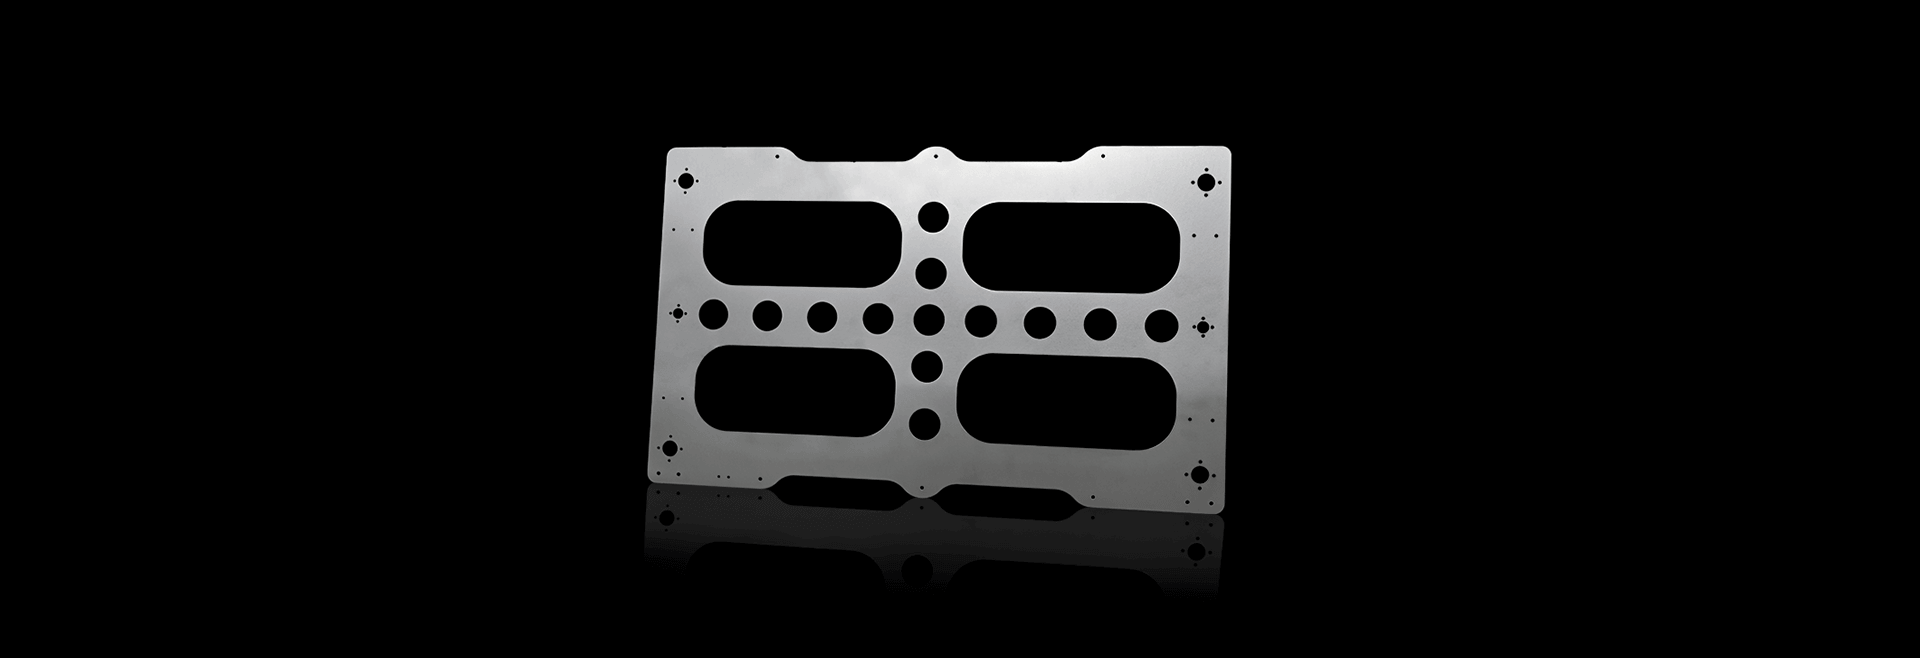 Kundenbauteil Heizplatte für 3D-Drucker aus Aluminium Blechbearbeitung